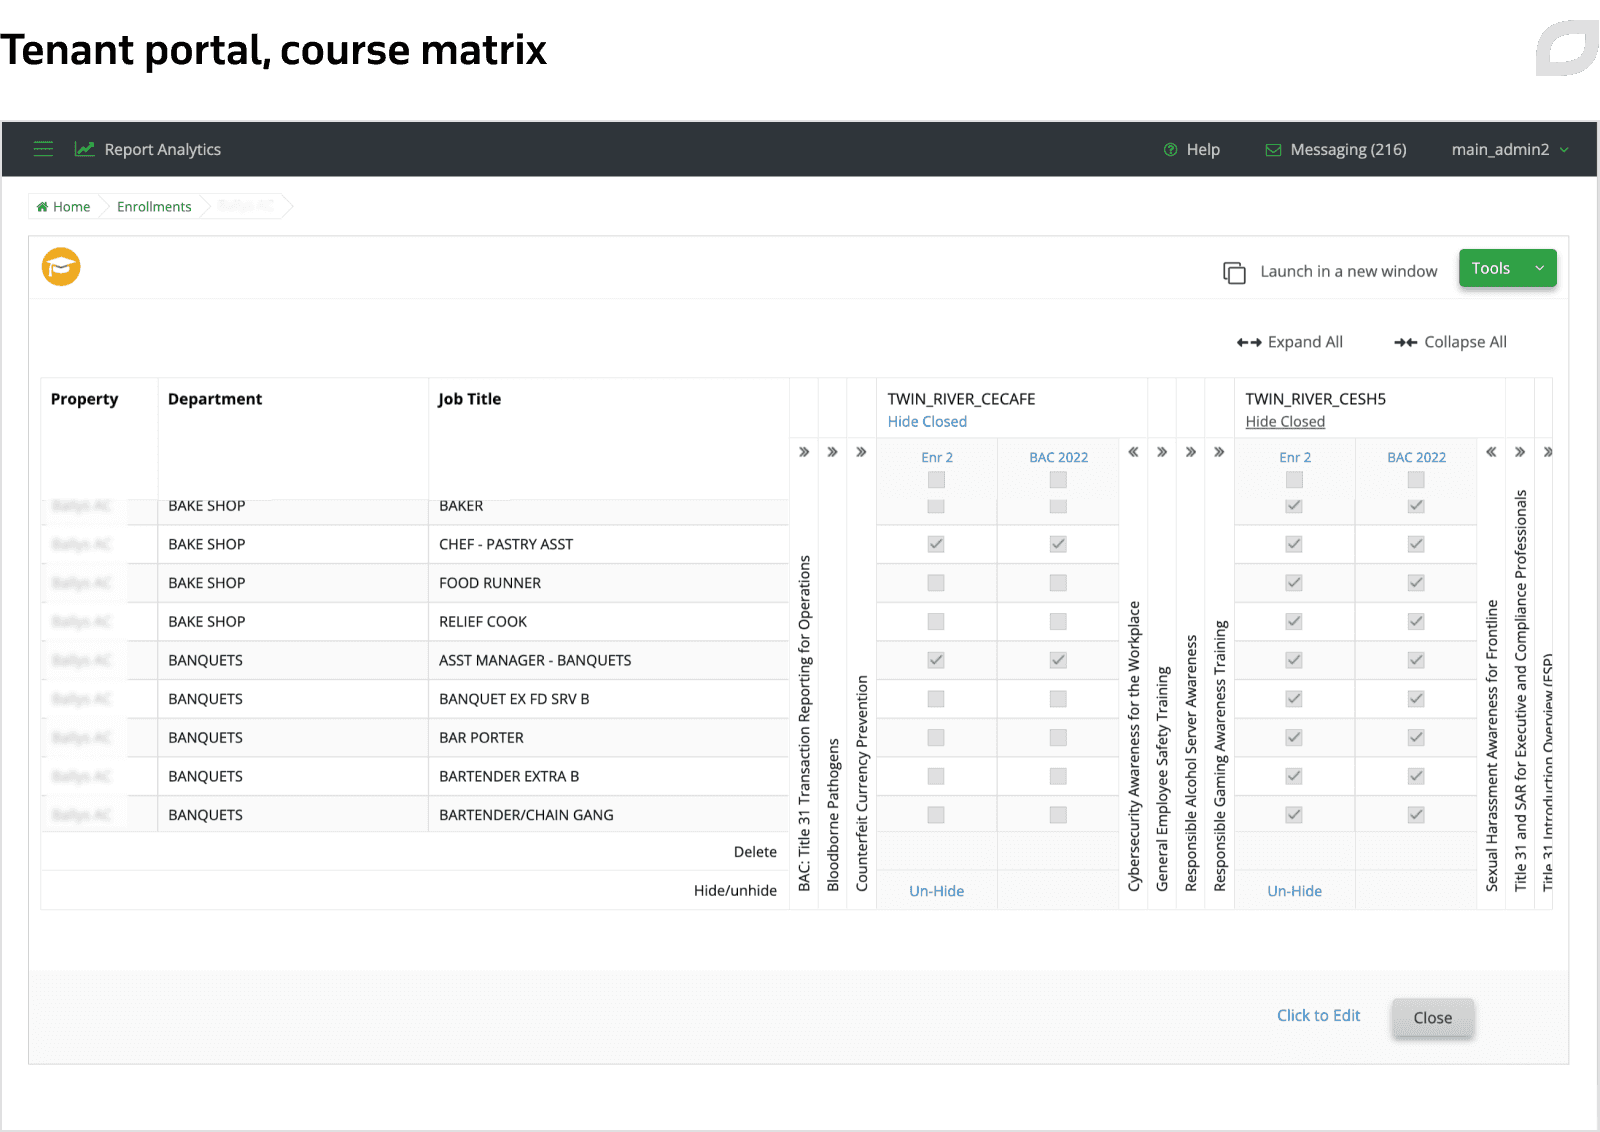 Tenant portal, course matrix